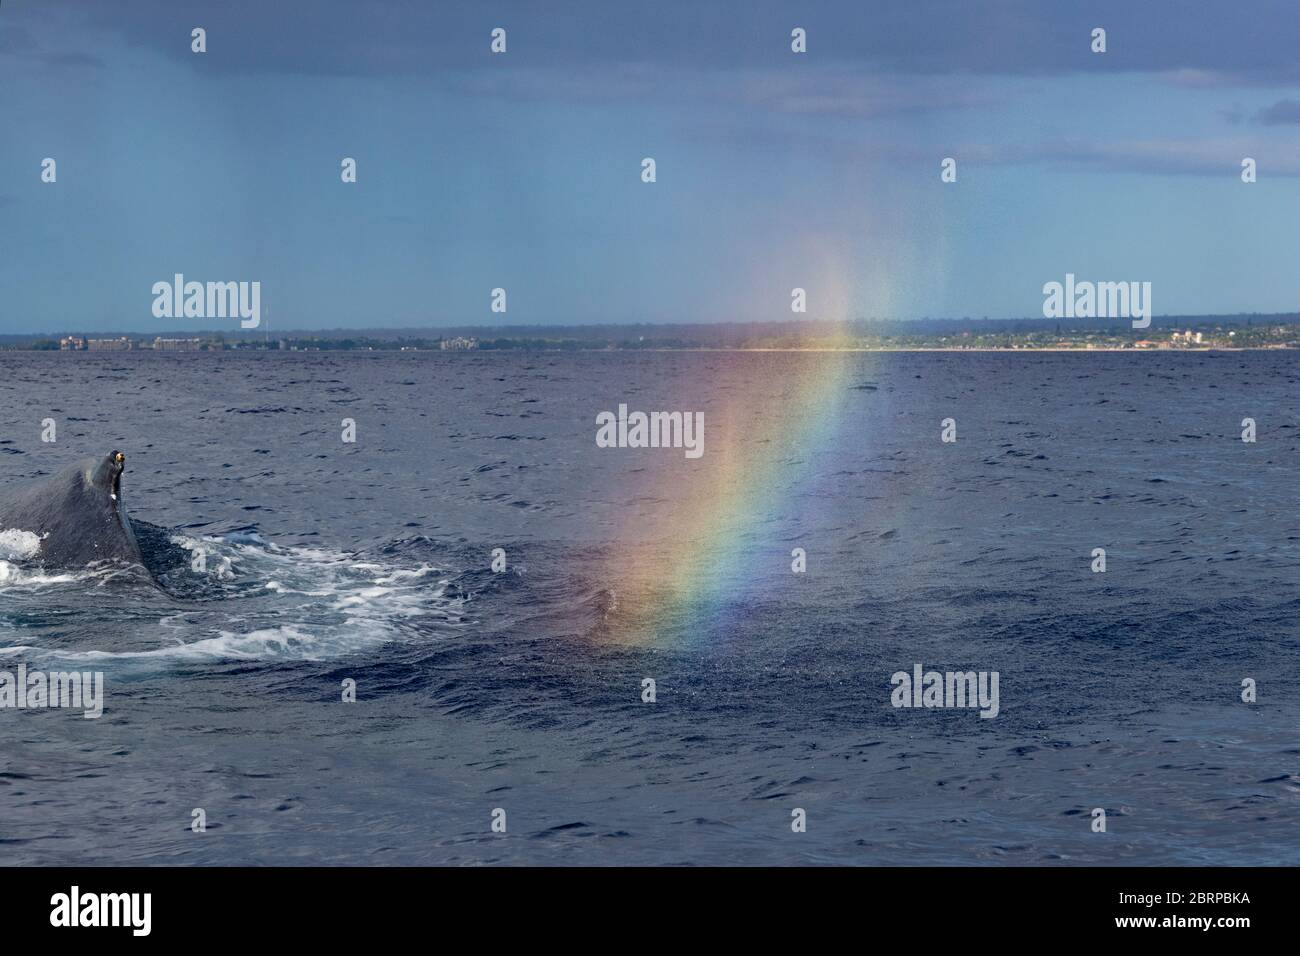 Ein Wal Nebel Regenbogen oder Walbogen schimmert im driftenden Auslauf eines Buckelwals, Megaptera novaeangliae, Kihei, Maui, Hawaii, Hawaii Buckelwha Stockfoto